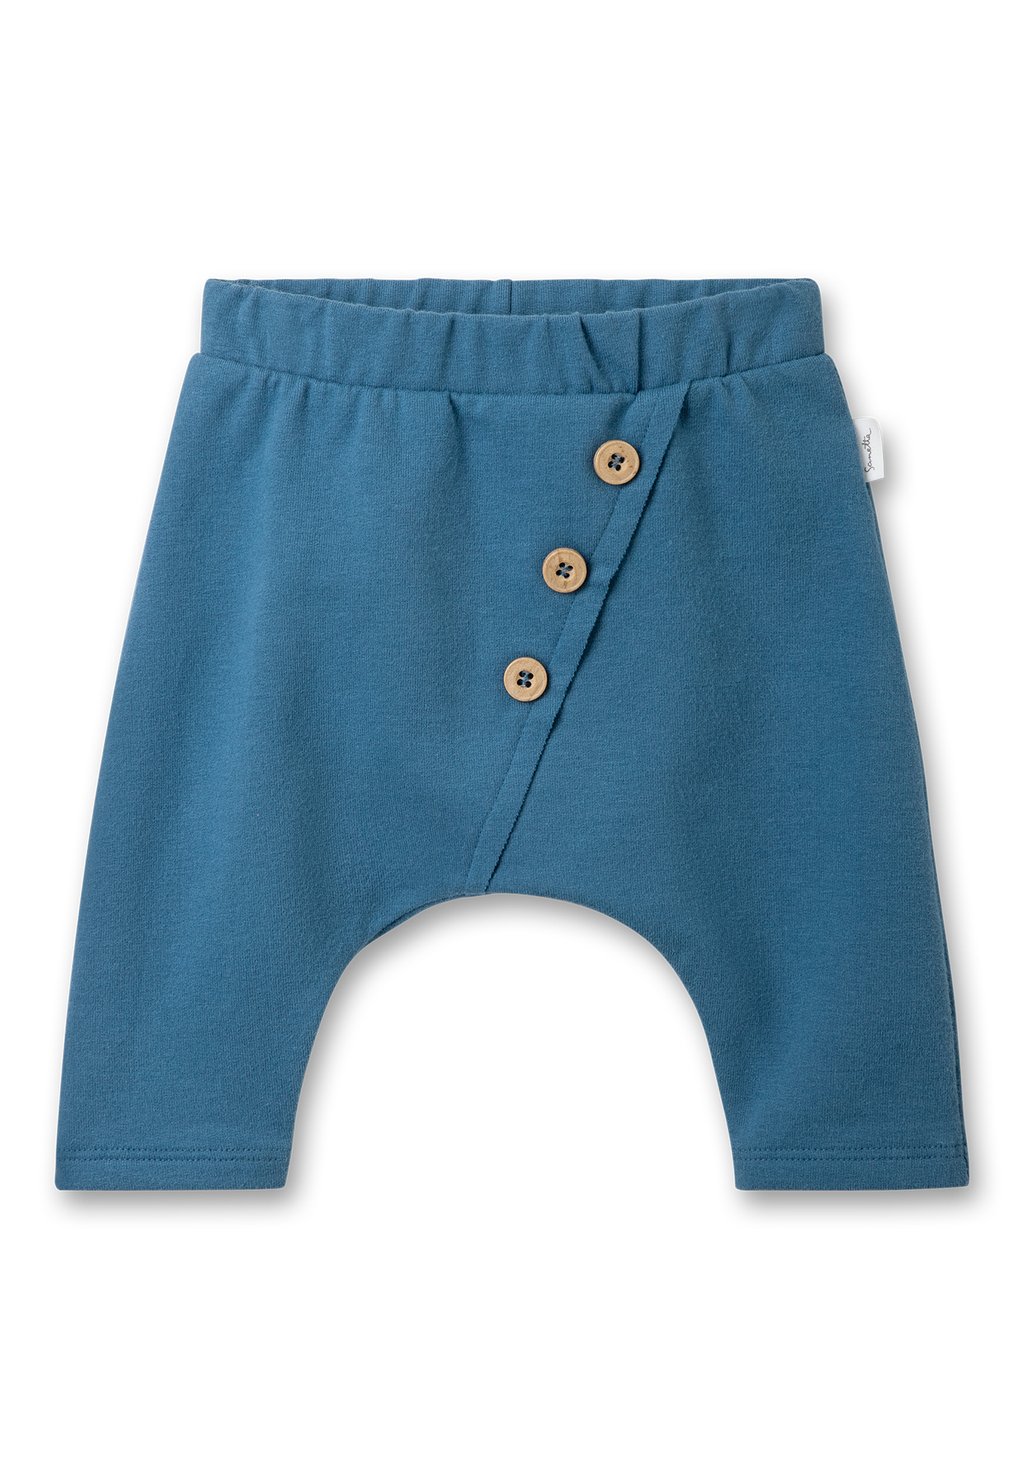 Брюки из ткани UNISEX Sanetta Pure, цвет blau брюки из ткани sanetta pure цвет rosa